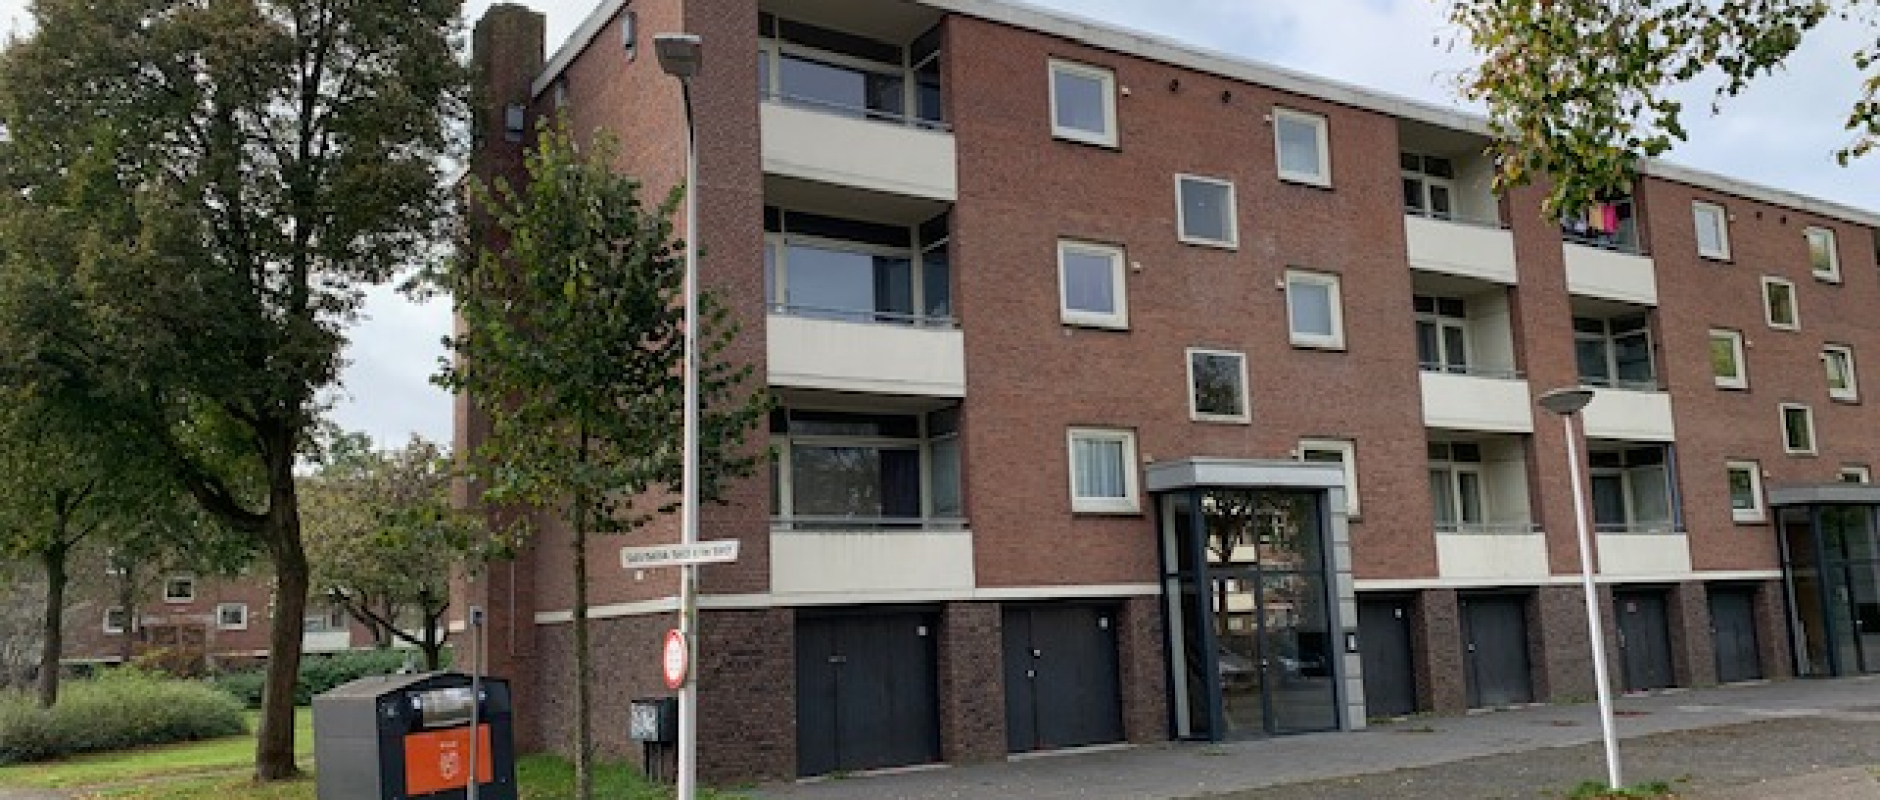 Woning te koop aan de Klooienberglaan 567 te Zwolle